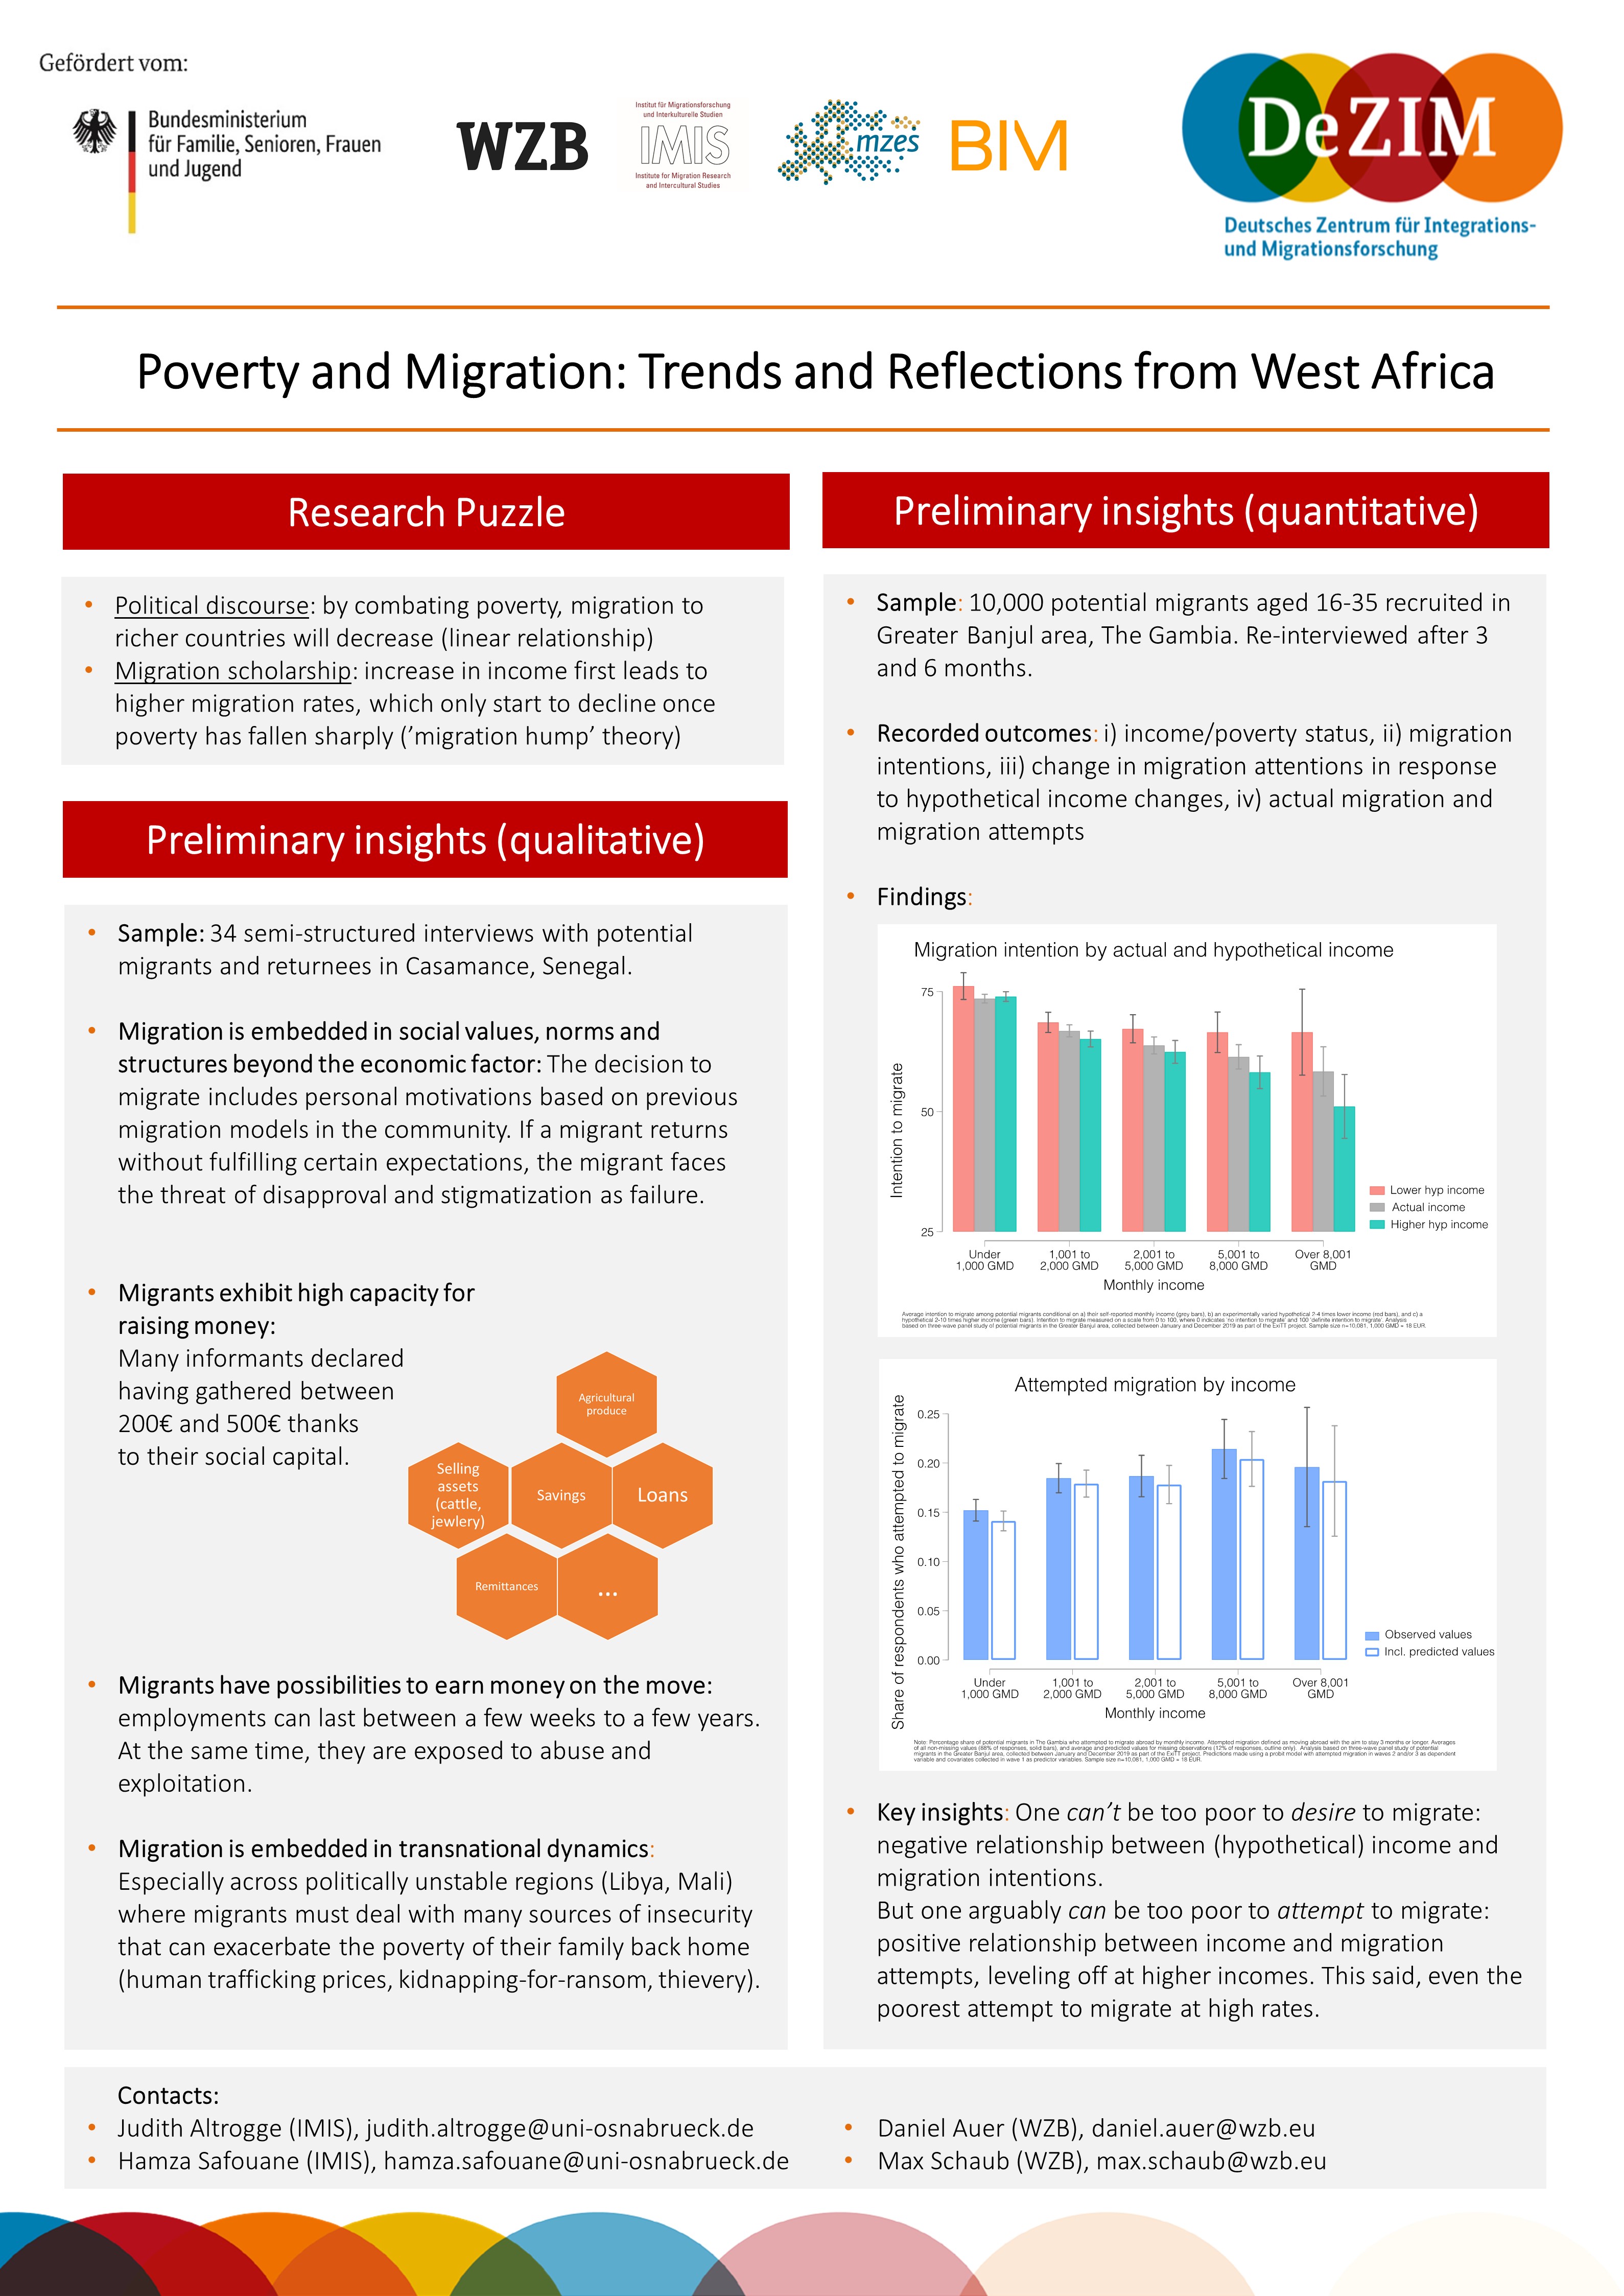 Ergebnispräsentation zu Armut und Migration, Abschlusskonferenz des Pilotprojektes ExiTT, Dezember 2019 in Berlin